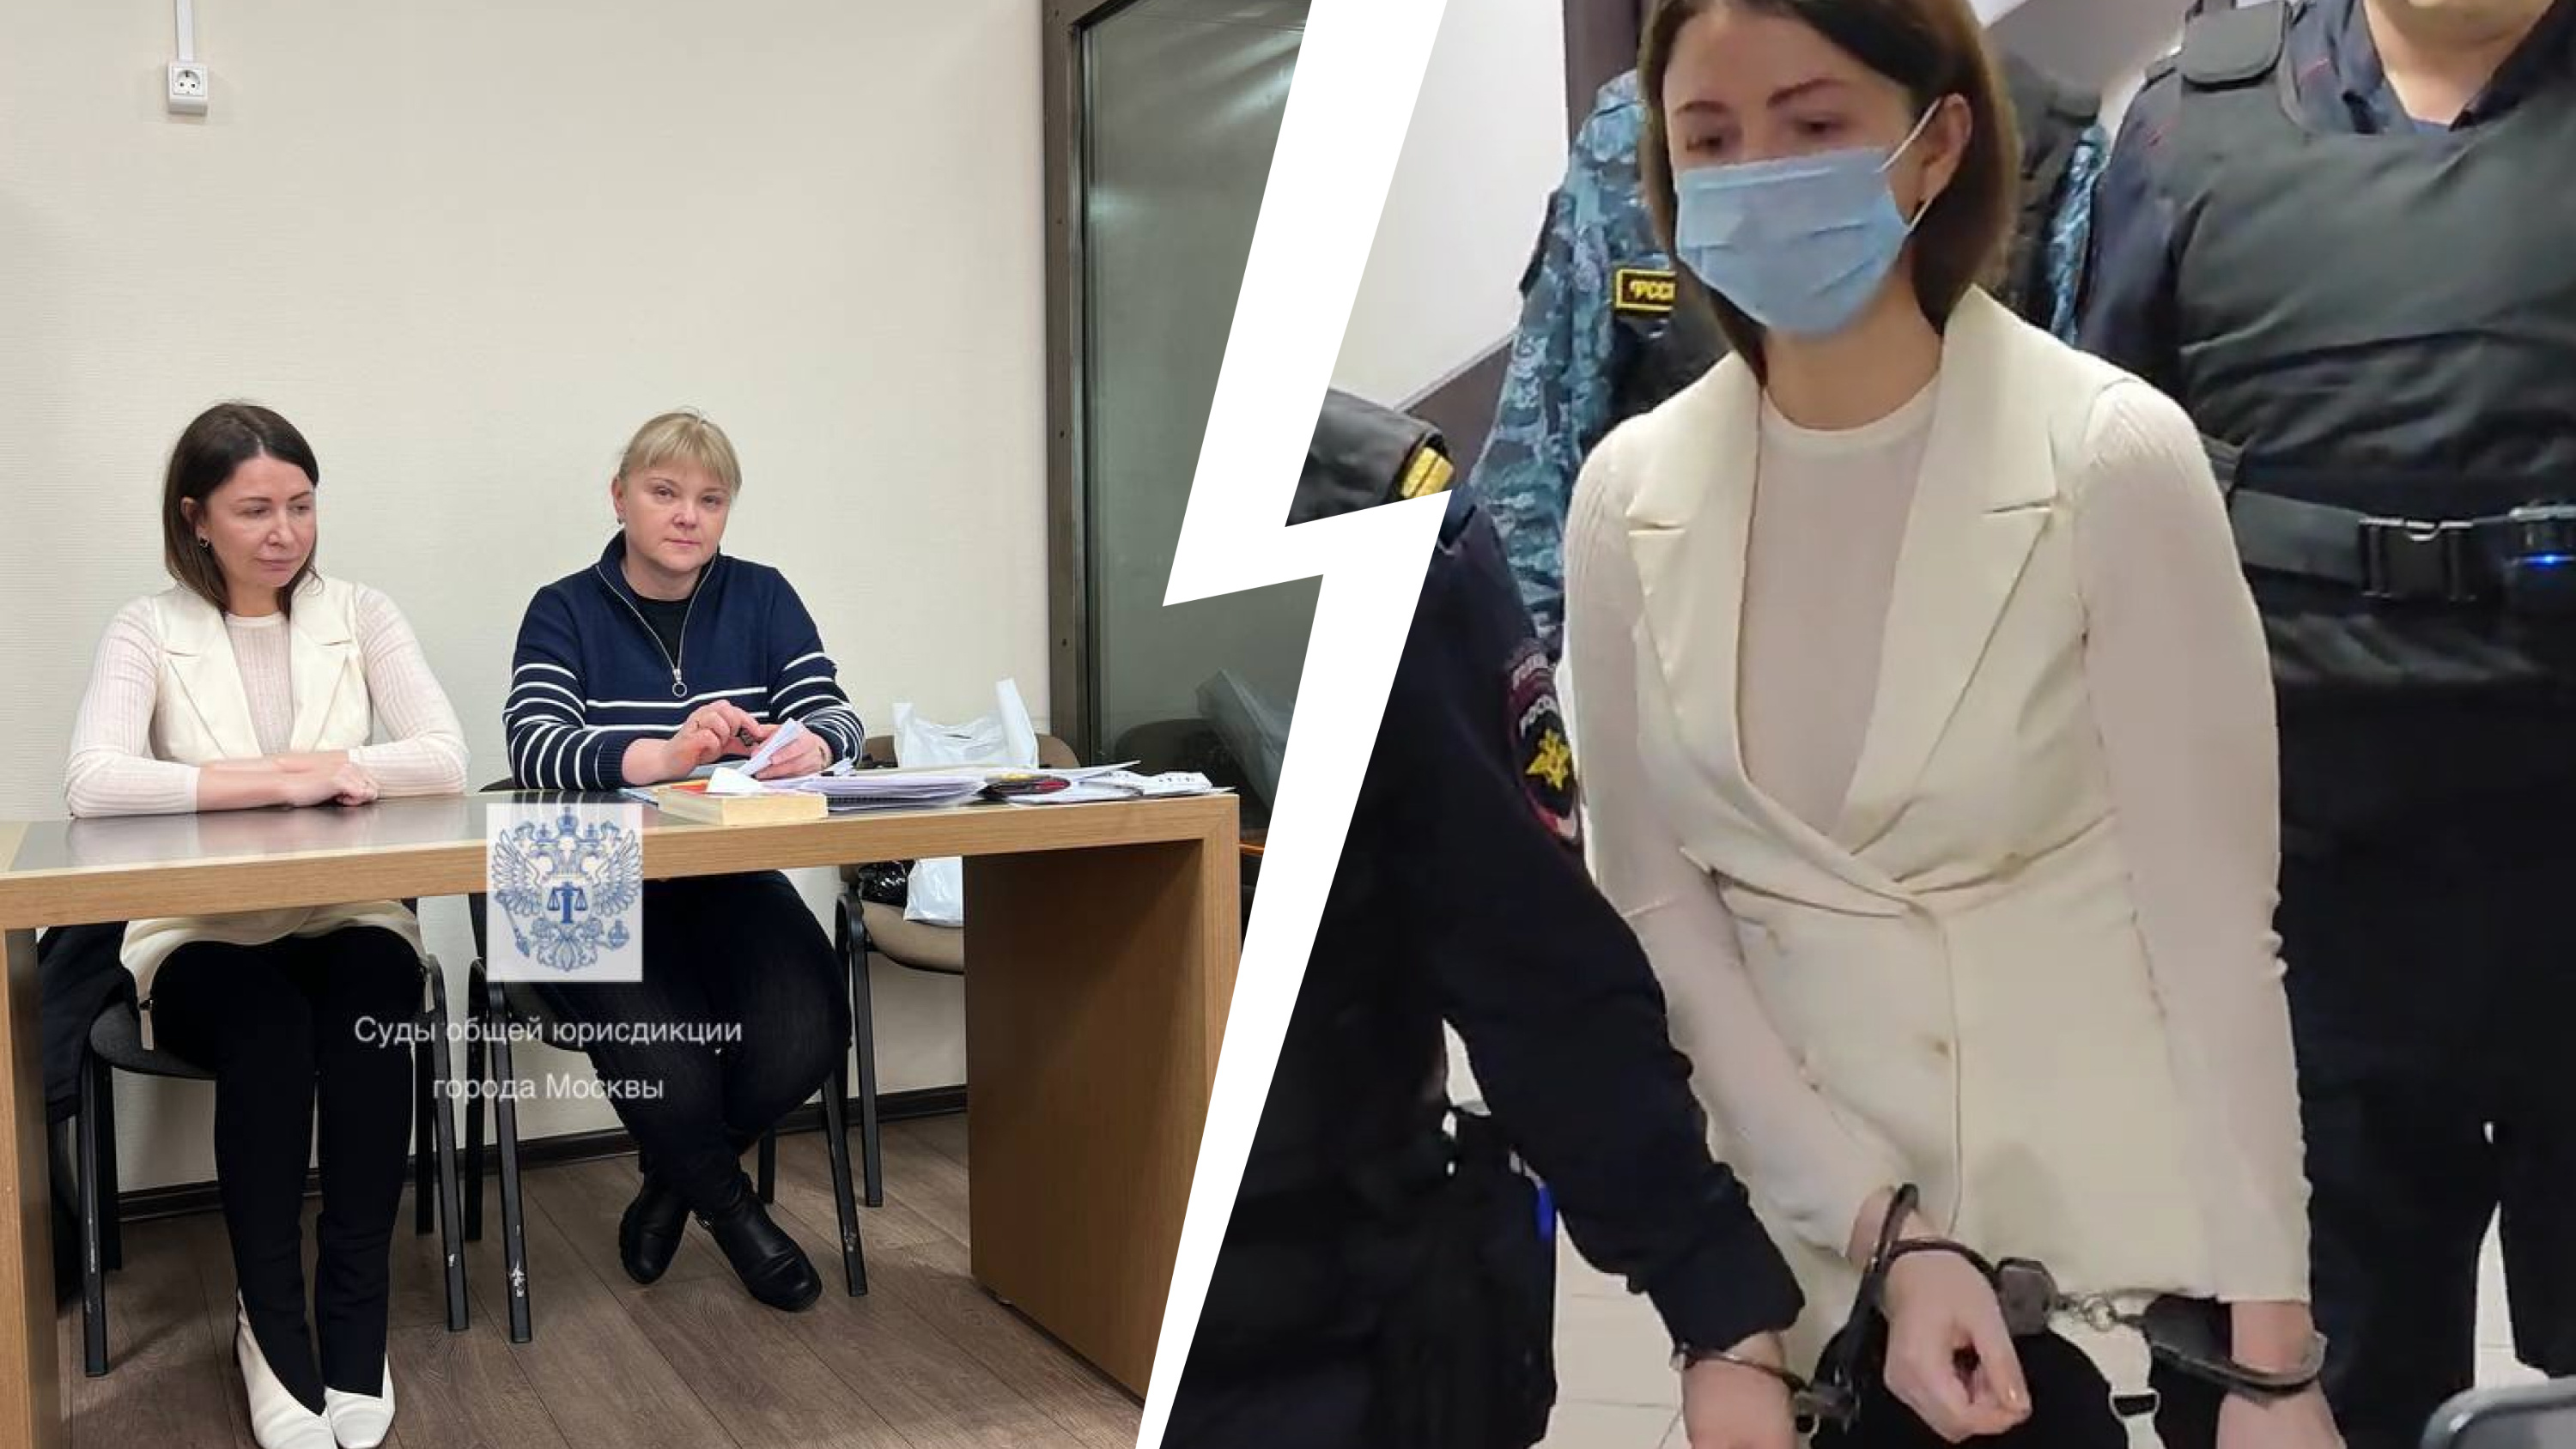 «Женщина сидеть не должна». Что происходило в московском суде, который отправил Блиновскую в СИЗО